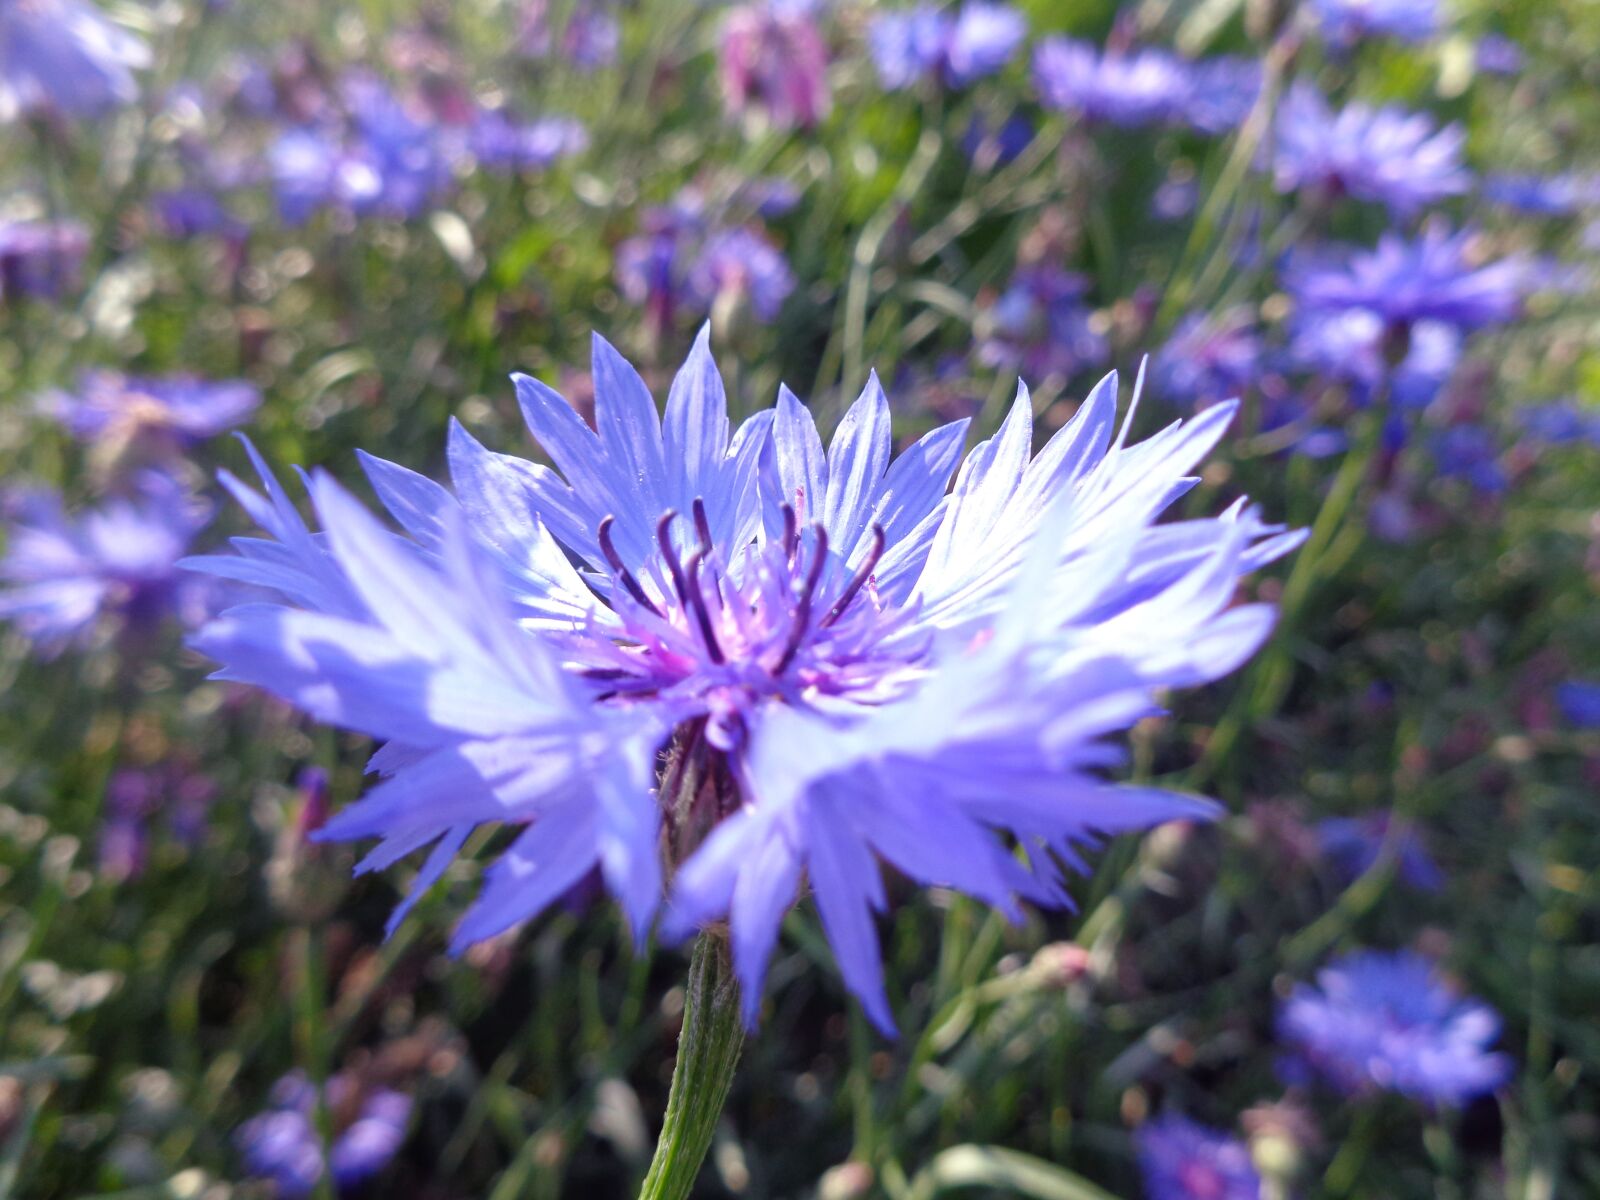 Sony Cyber-shot DSC-W730 sample photo. Field, flower, meadow photography